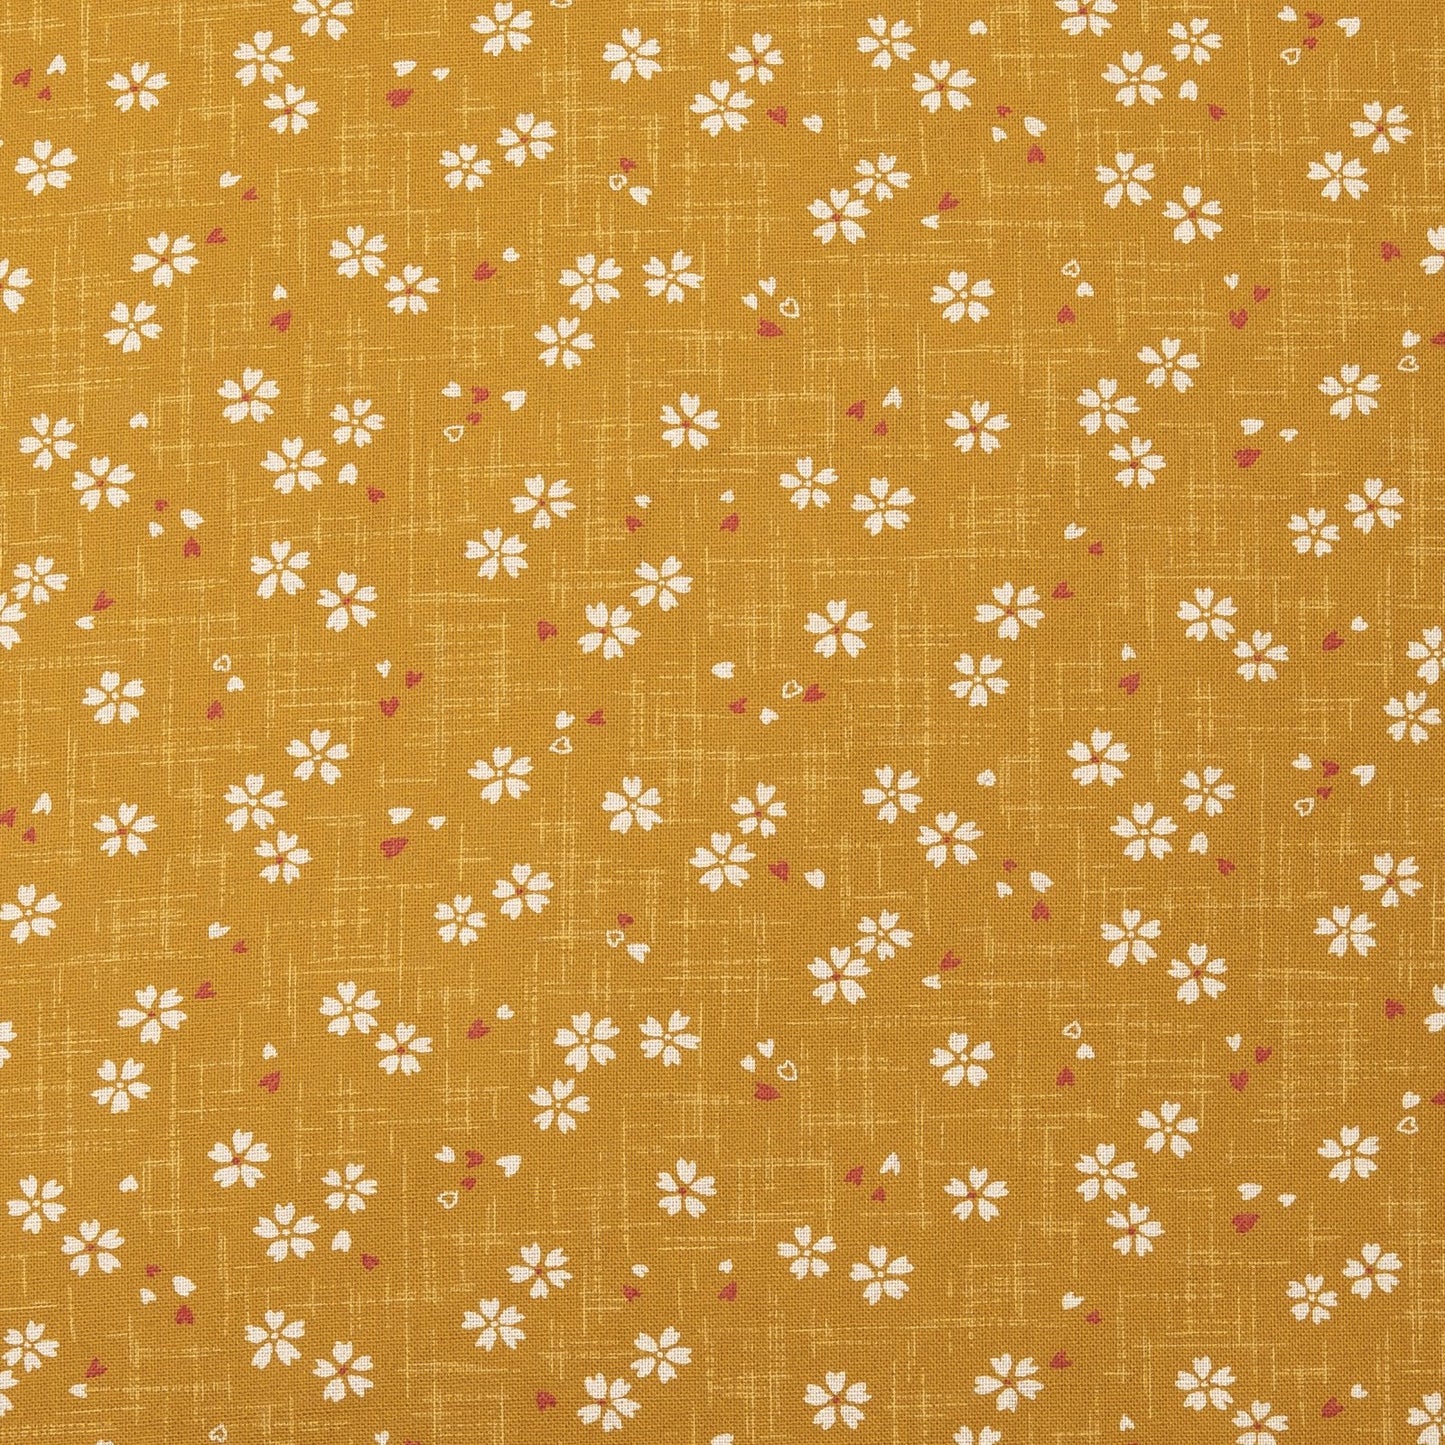 Imported Japanese Fabric - Sakura Gold